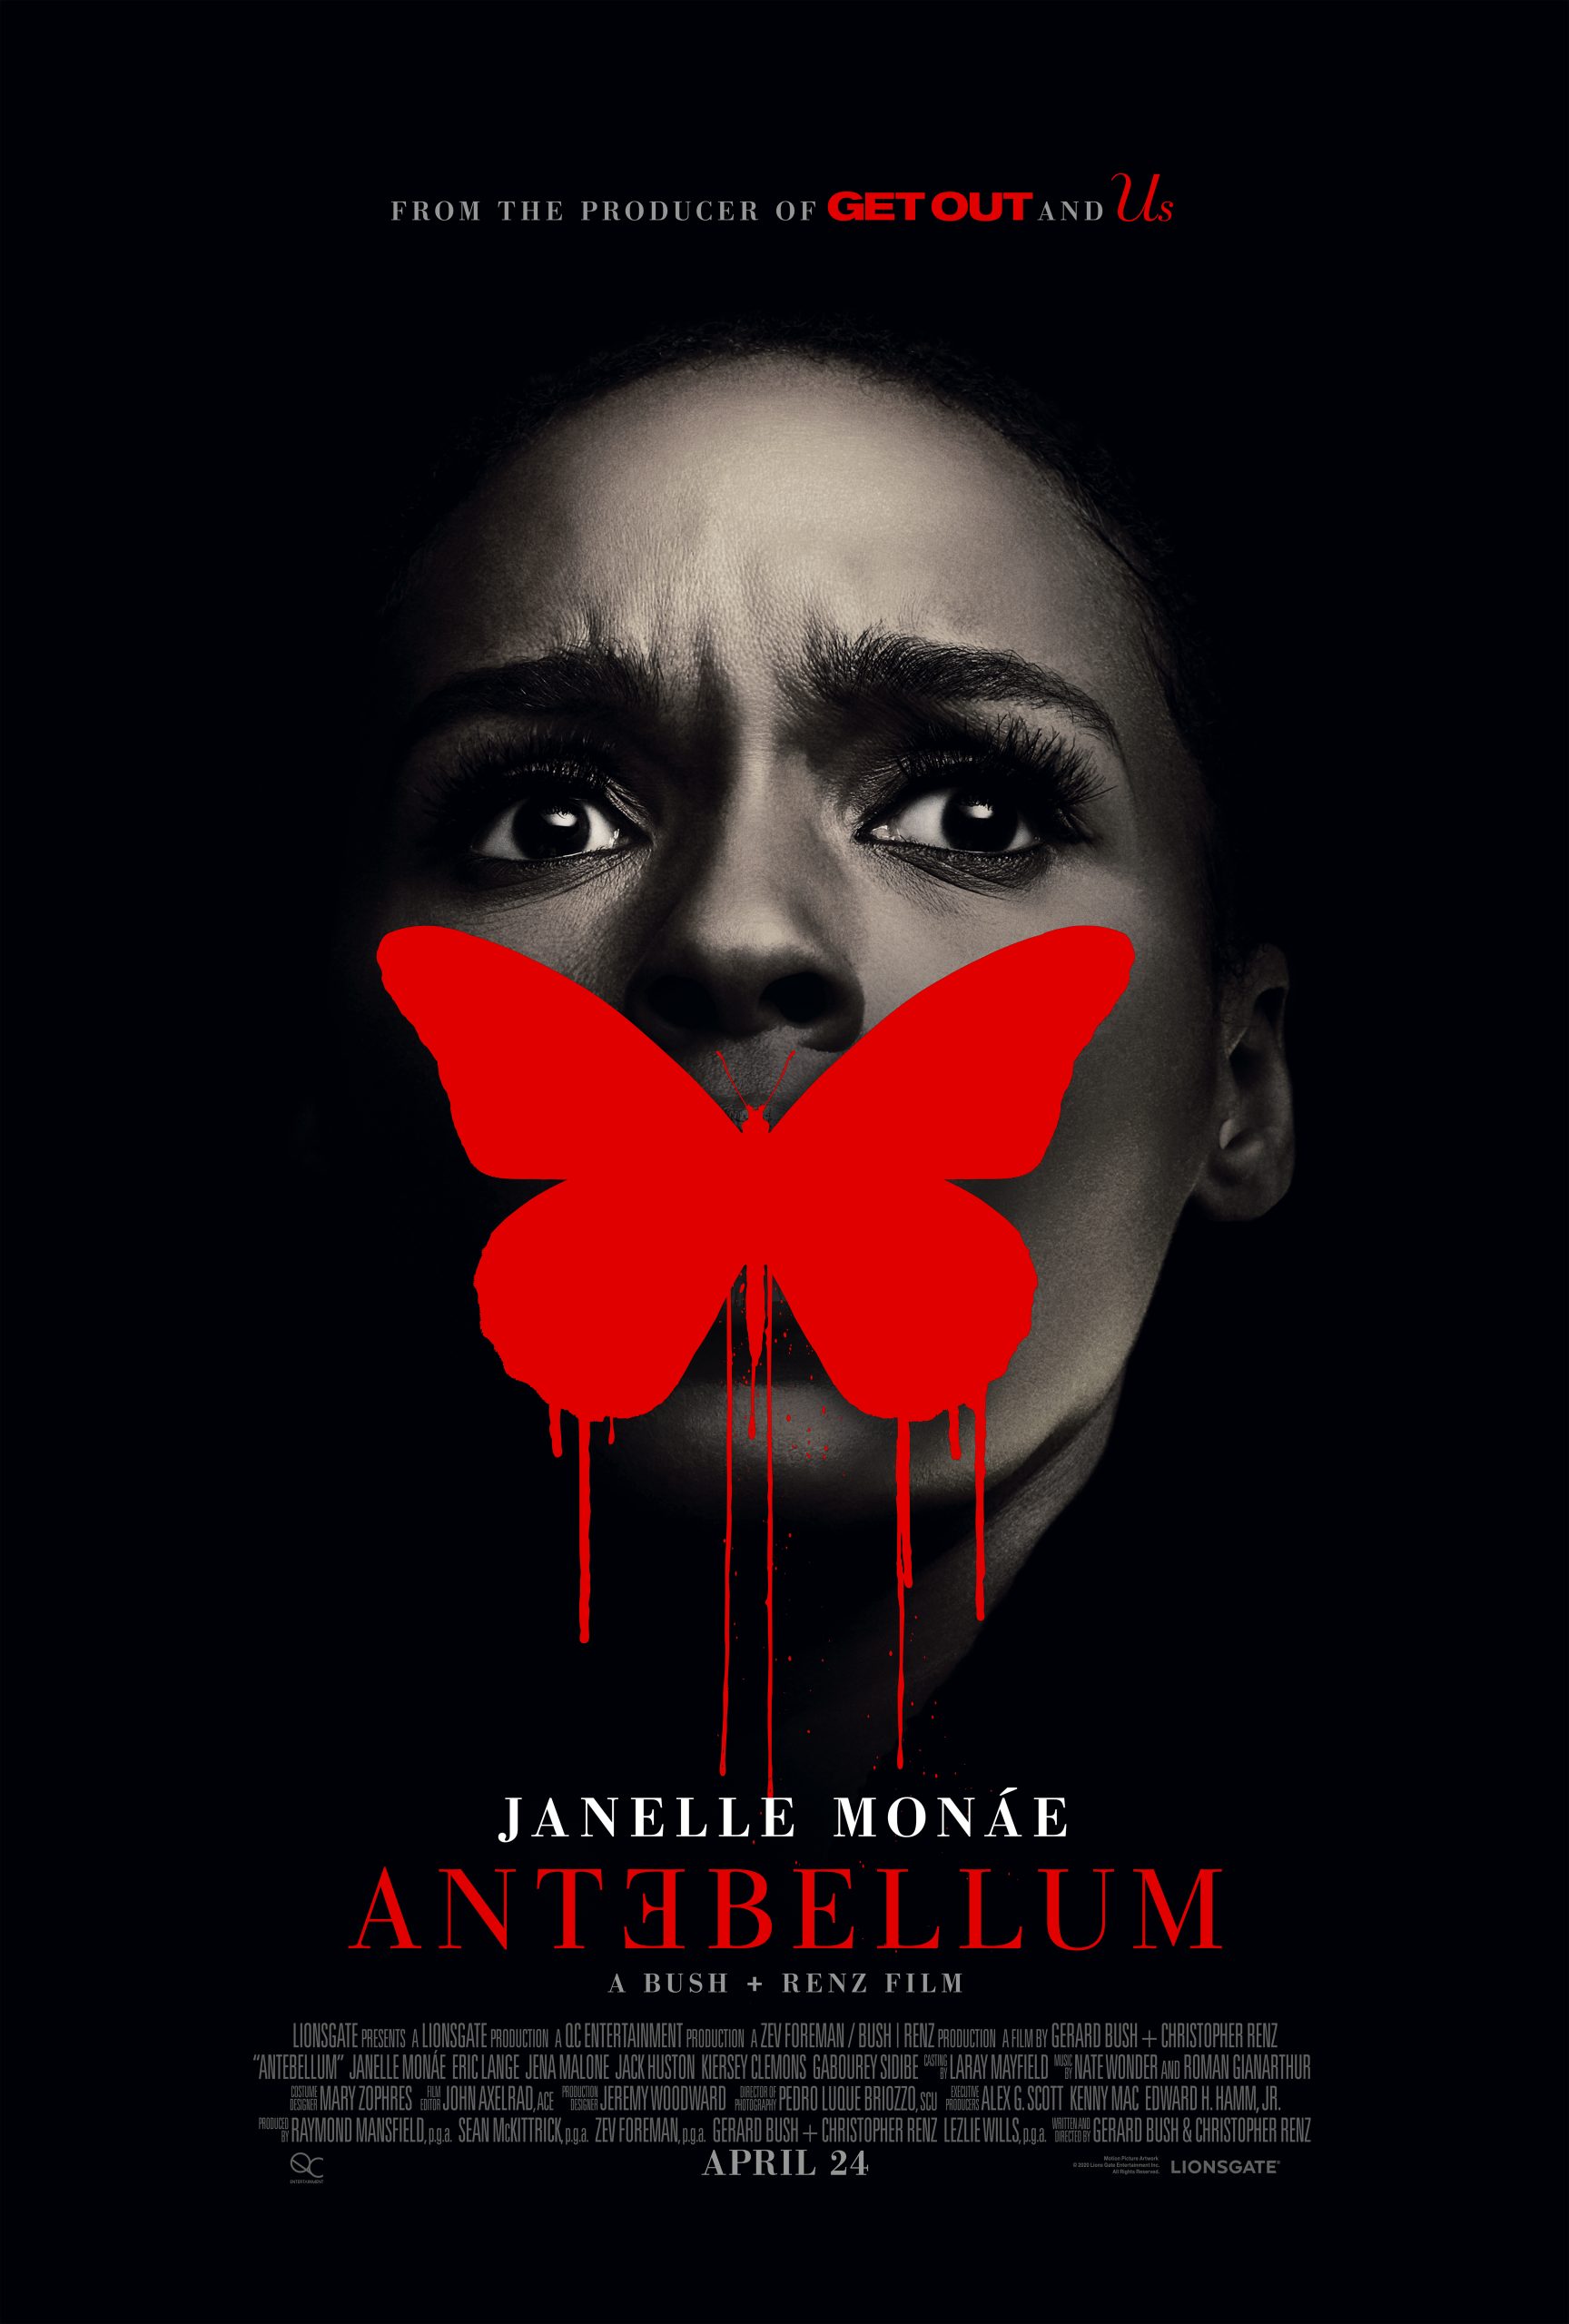 New Movie: Antebellum Starring Janelle Monae